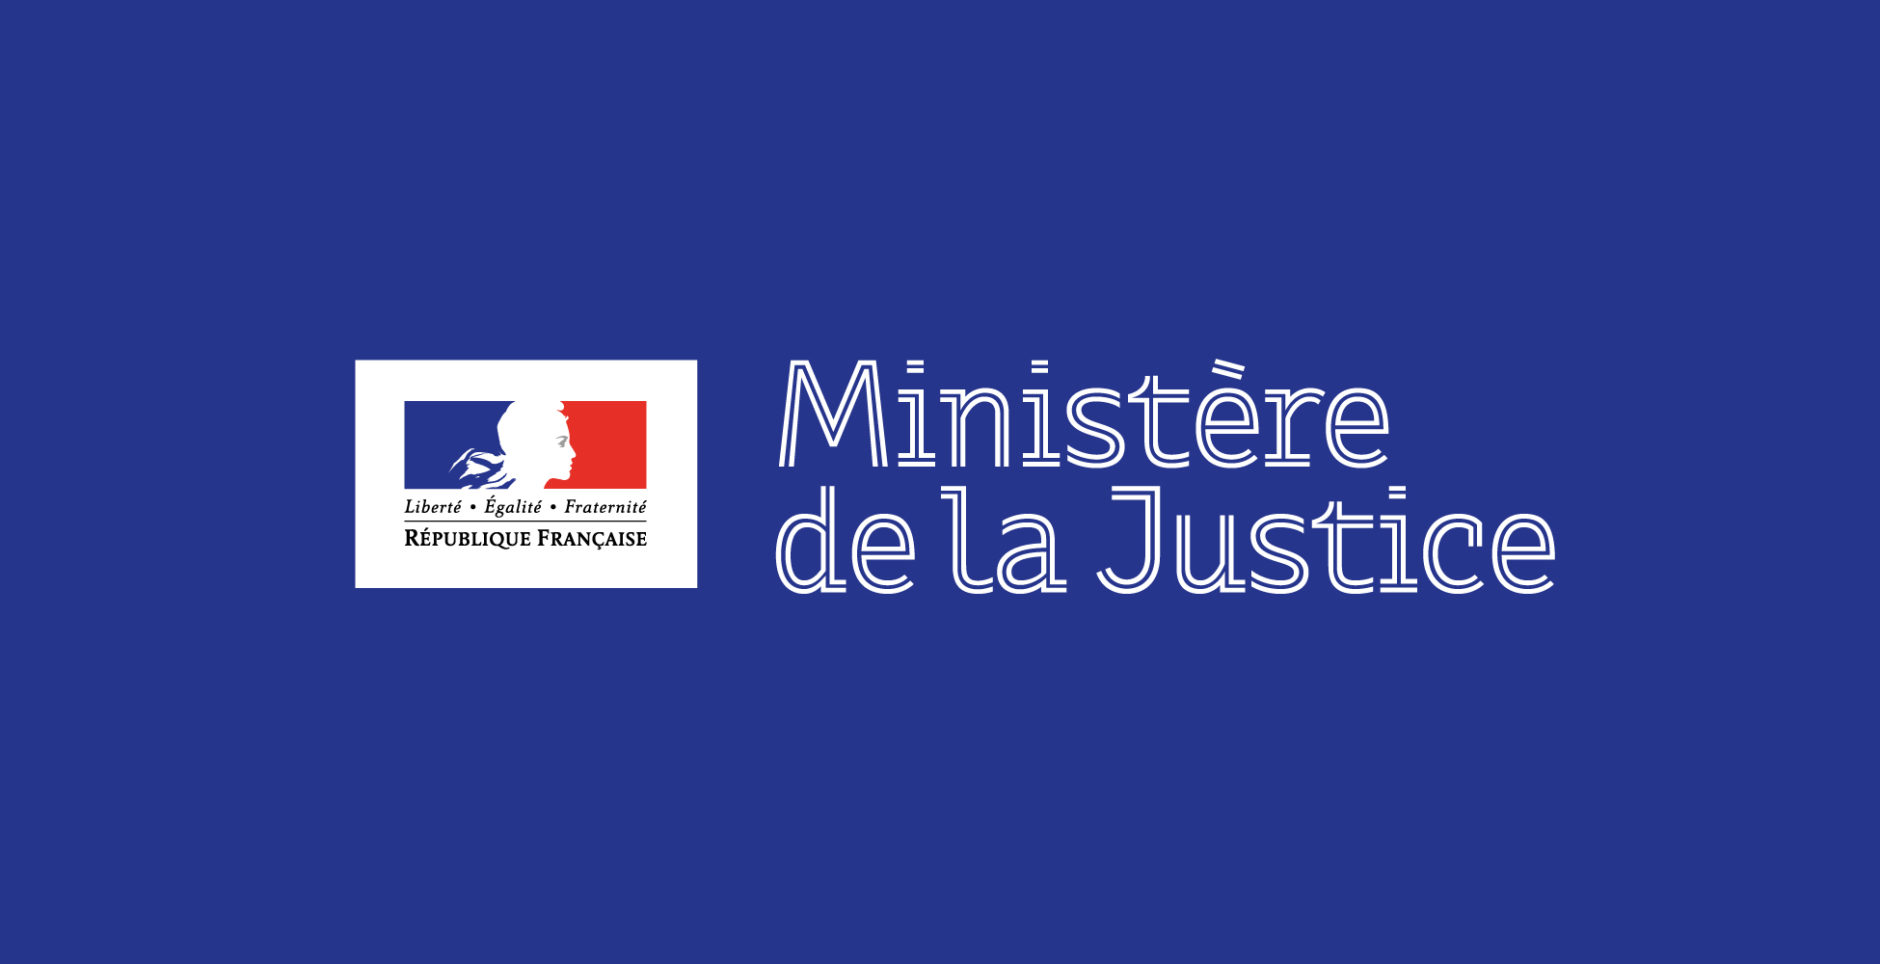 Identité visuelle branding institutionnel ministère justice